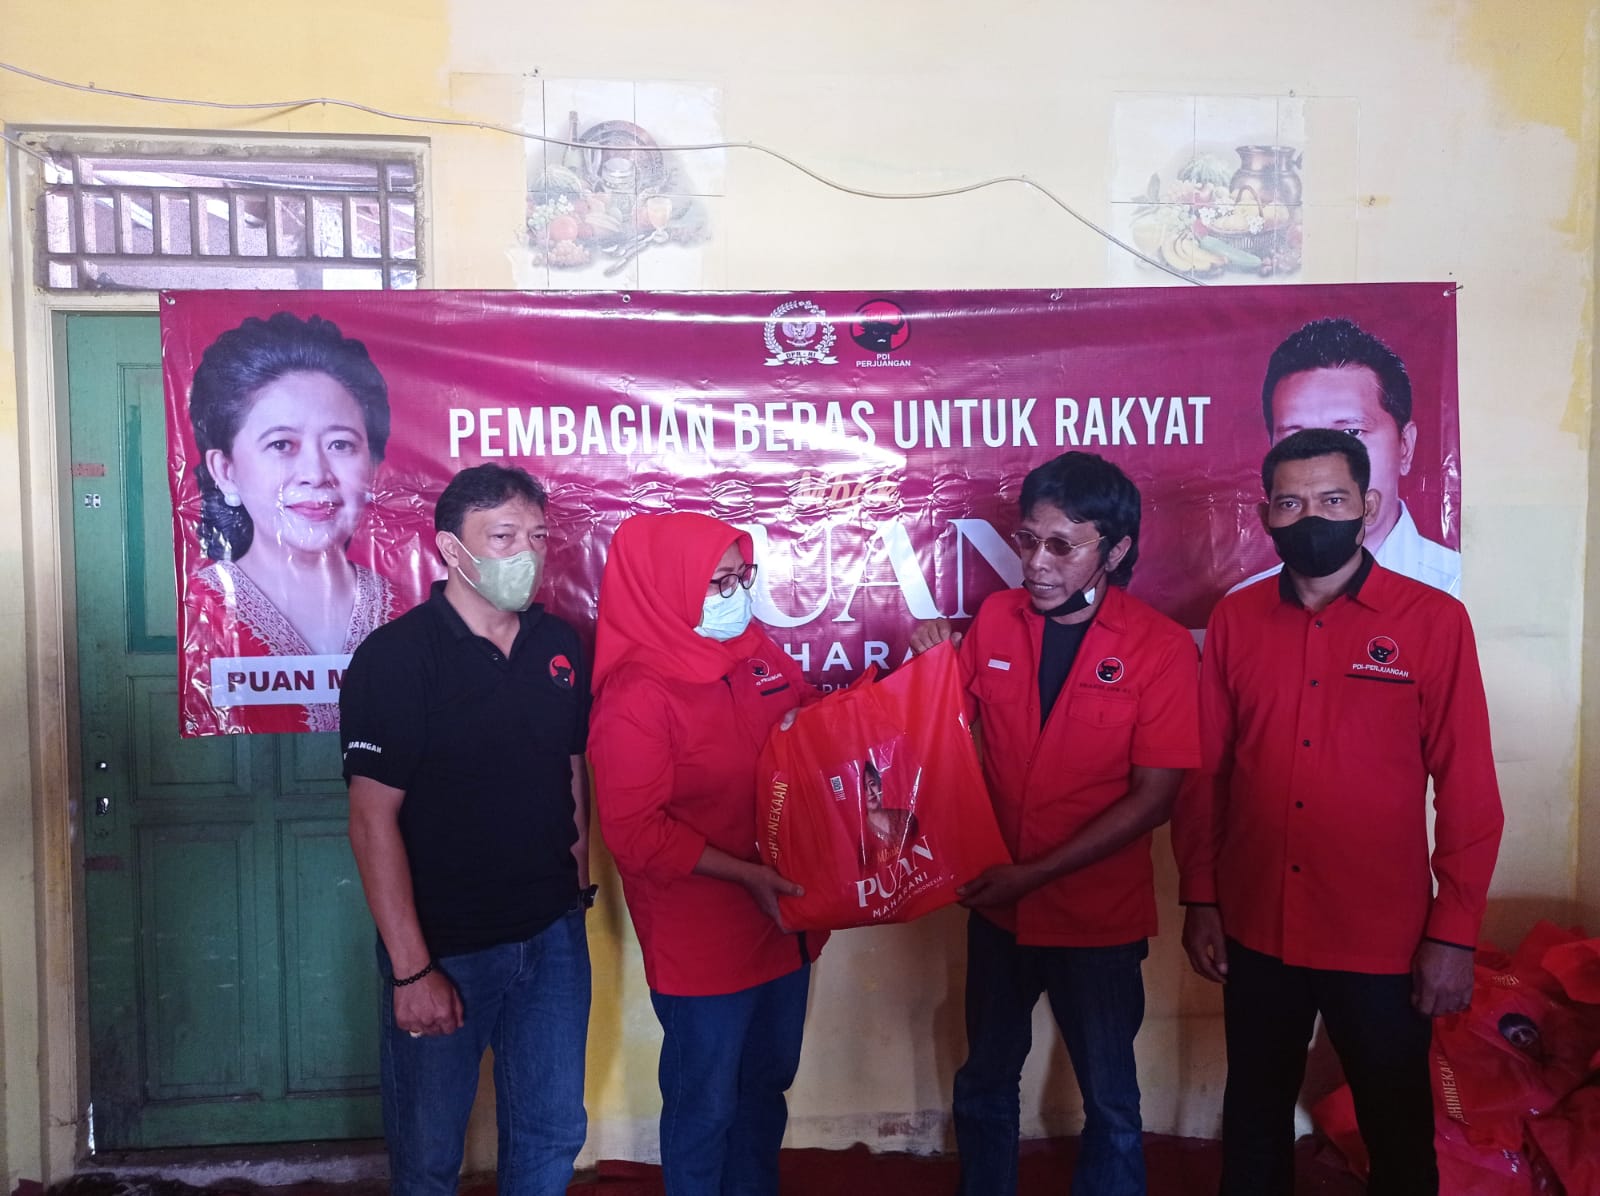 Anggota DPR RI Adian Napitupulu mewakili Mbak Puan secara simbolis membagikan paket beras kepada warga, didampingi Ketua DPC PDI Perjuangan Kabupaten Bogor Bayu Syahjohan dan Ketua Komisi IV DPRD Kabupaten Bogor, Muad Khalim.